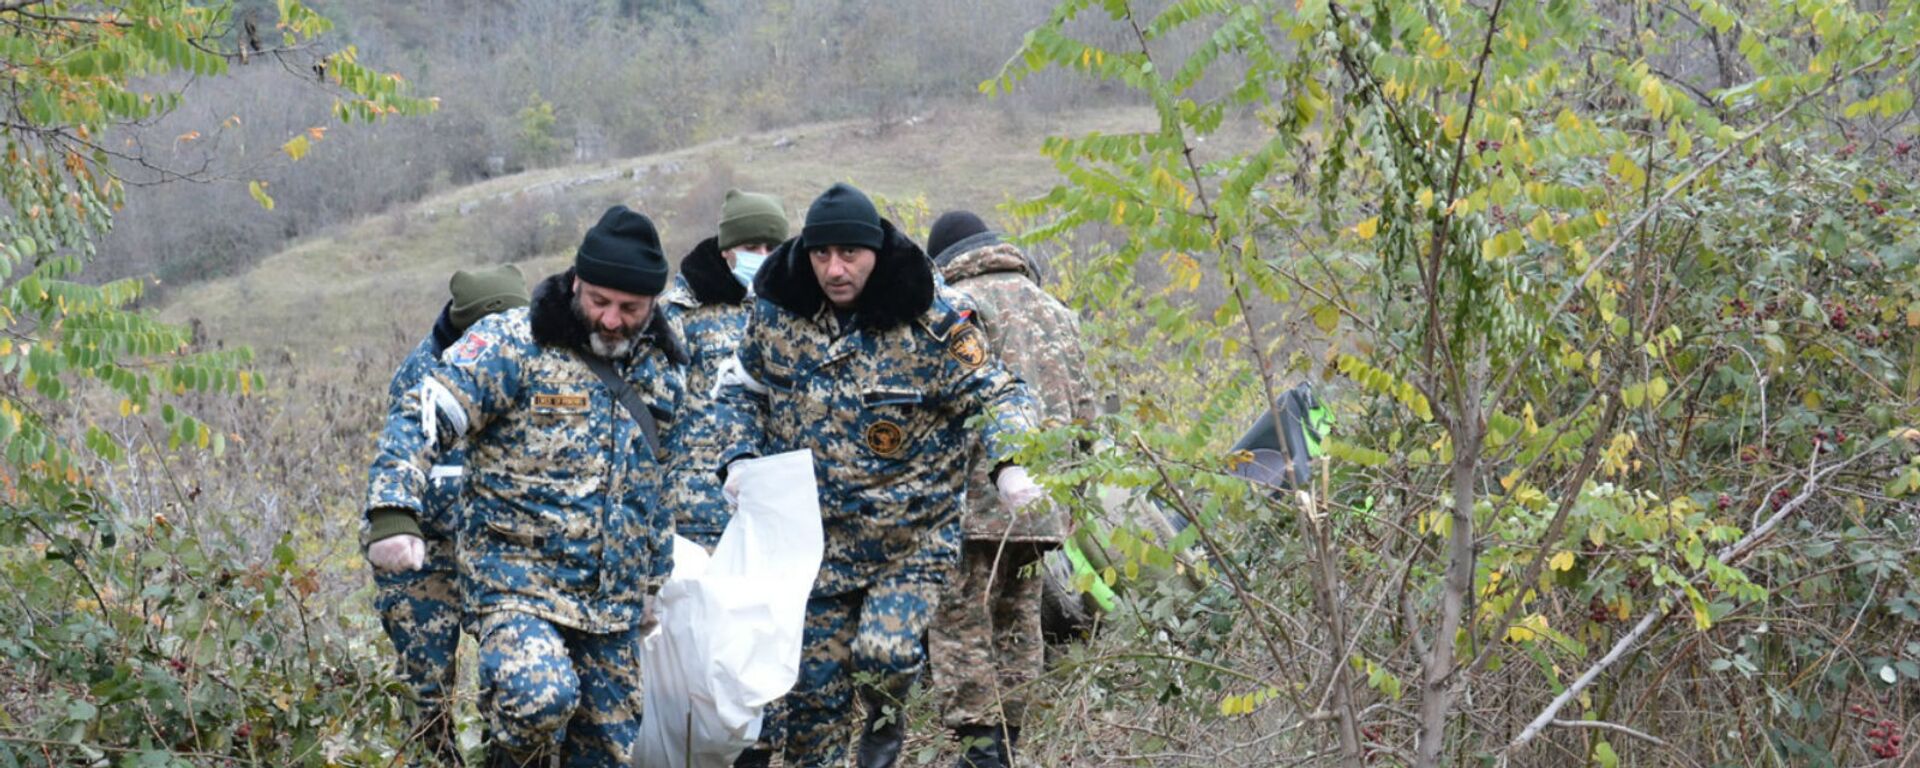 Спасательные отряды госслужбы по ЧС НКР продолжают поисково-спасательные работы на подконтрольных противнику территориях (5 января 2021). Карабах - Sputnik Արմենիա, 1920, 10.02.2021